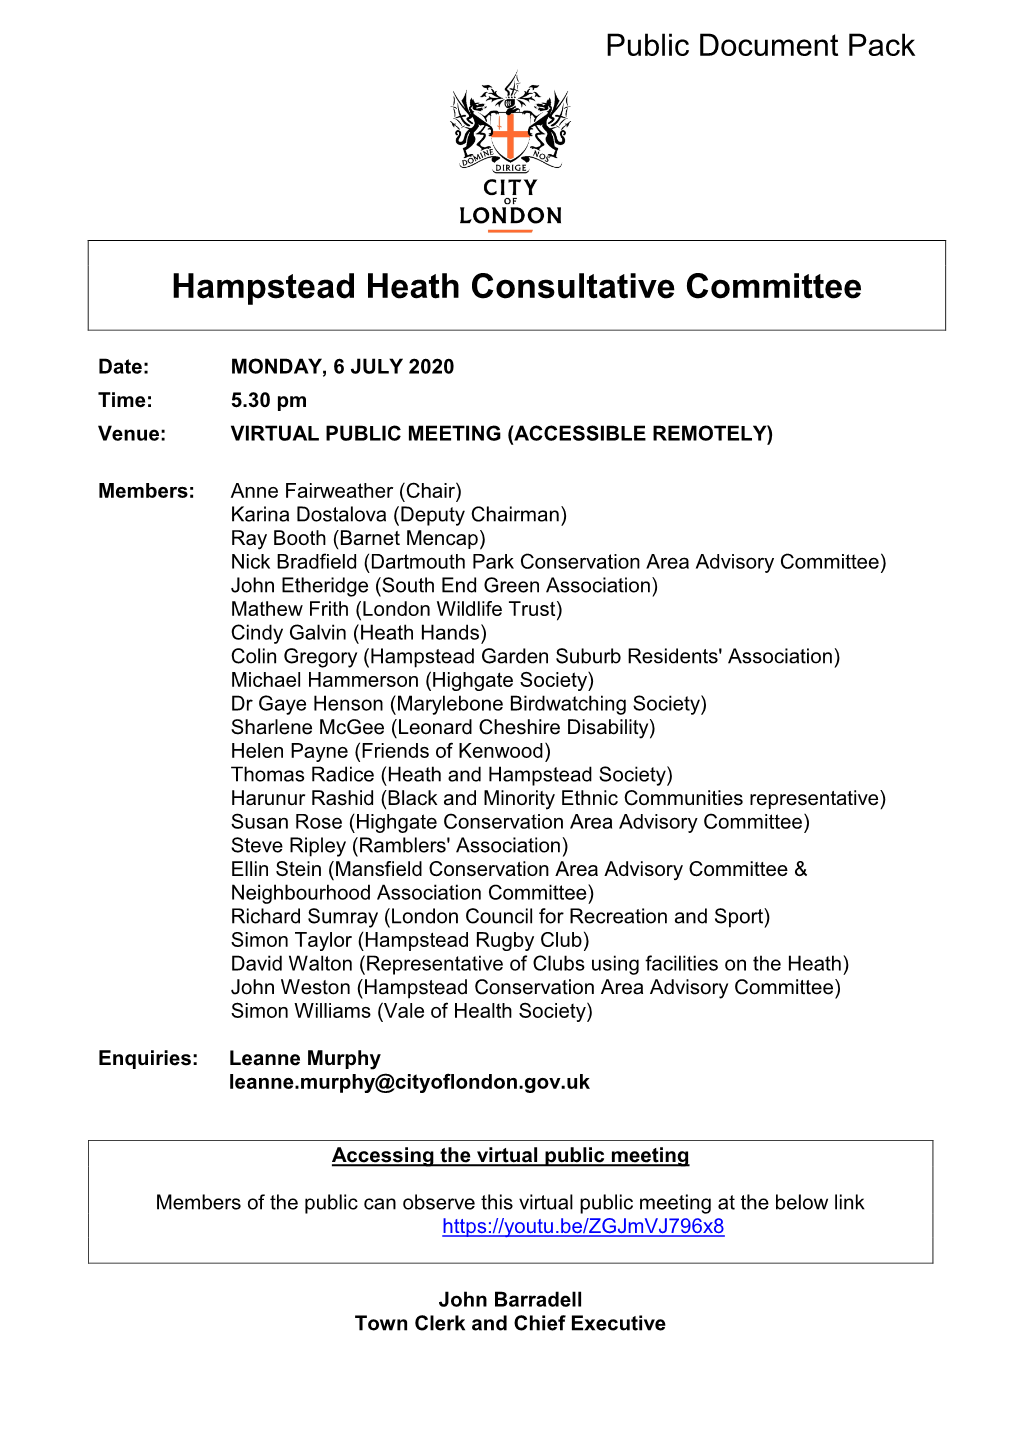 (Public Pack)Agenda Document for Hampstead Heath Consultative